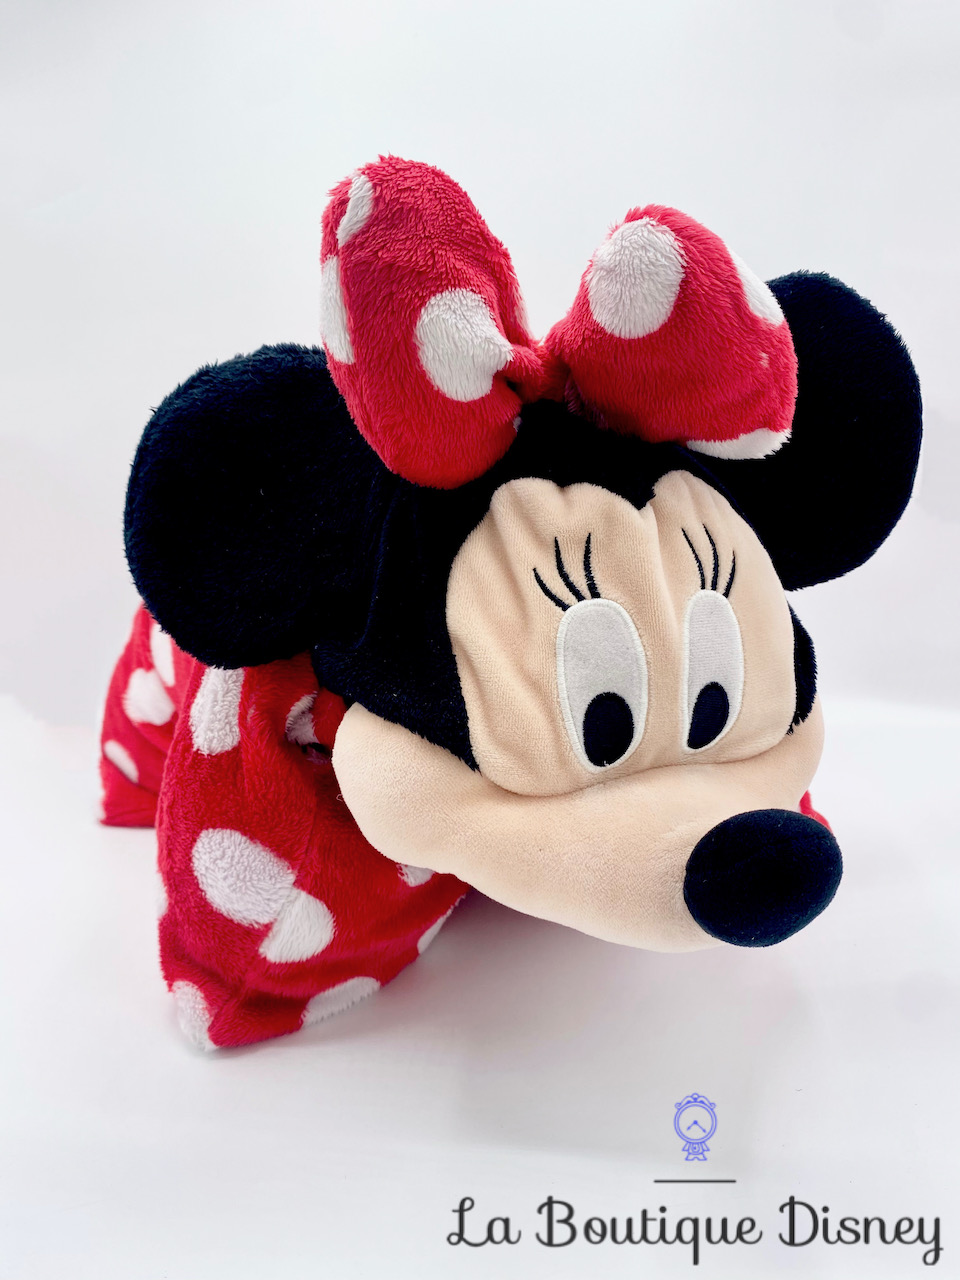 Coussin Minnie Mouse Disney Parks Disneyland peluche oreiller pliable rouge pois